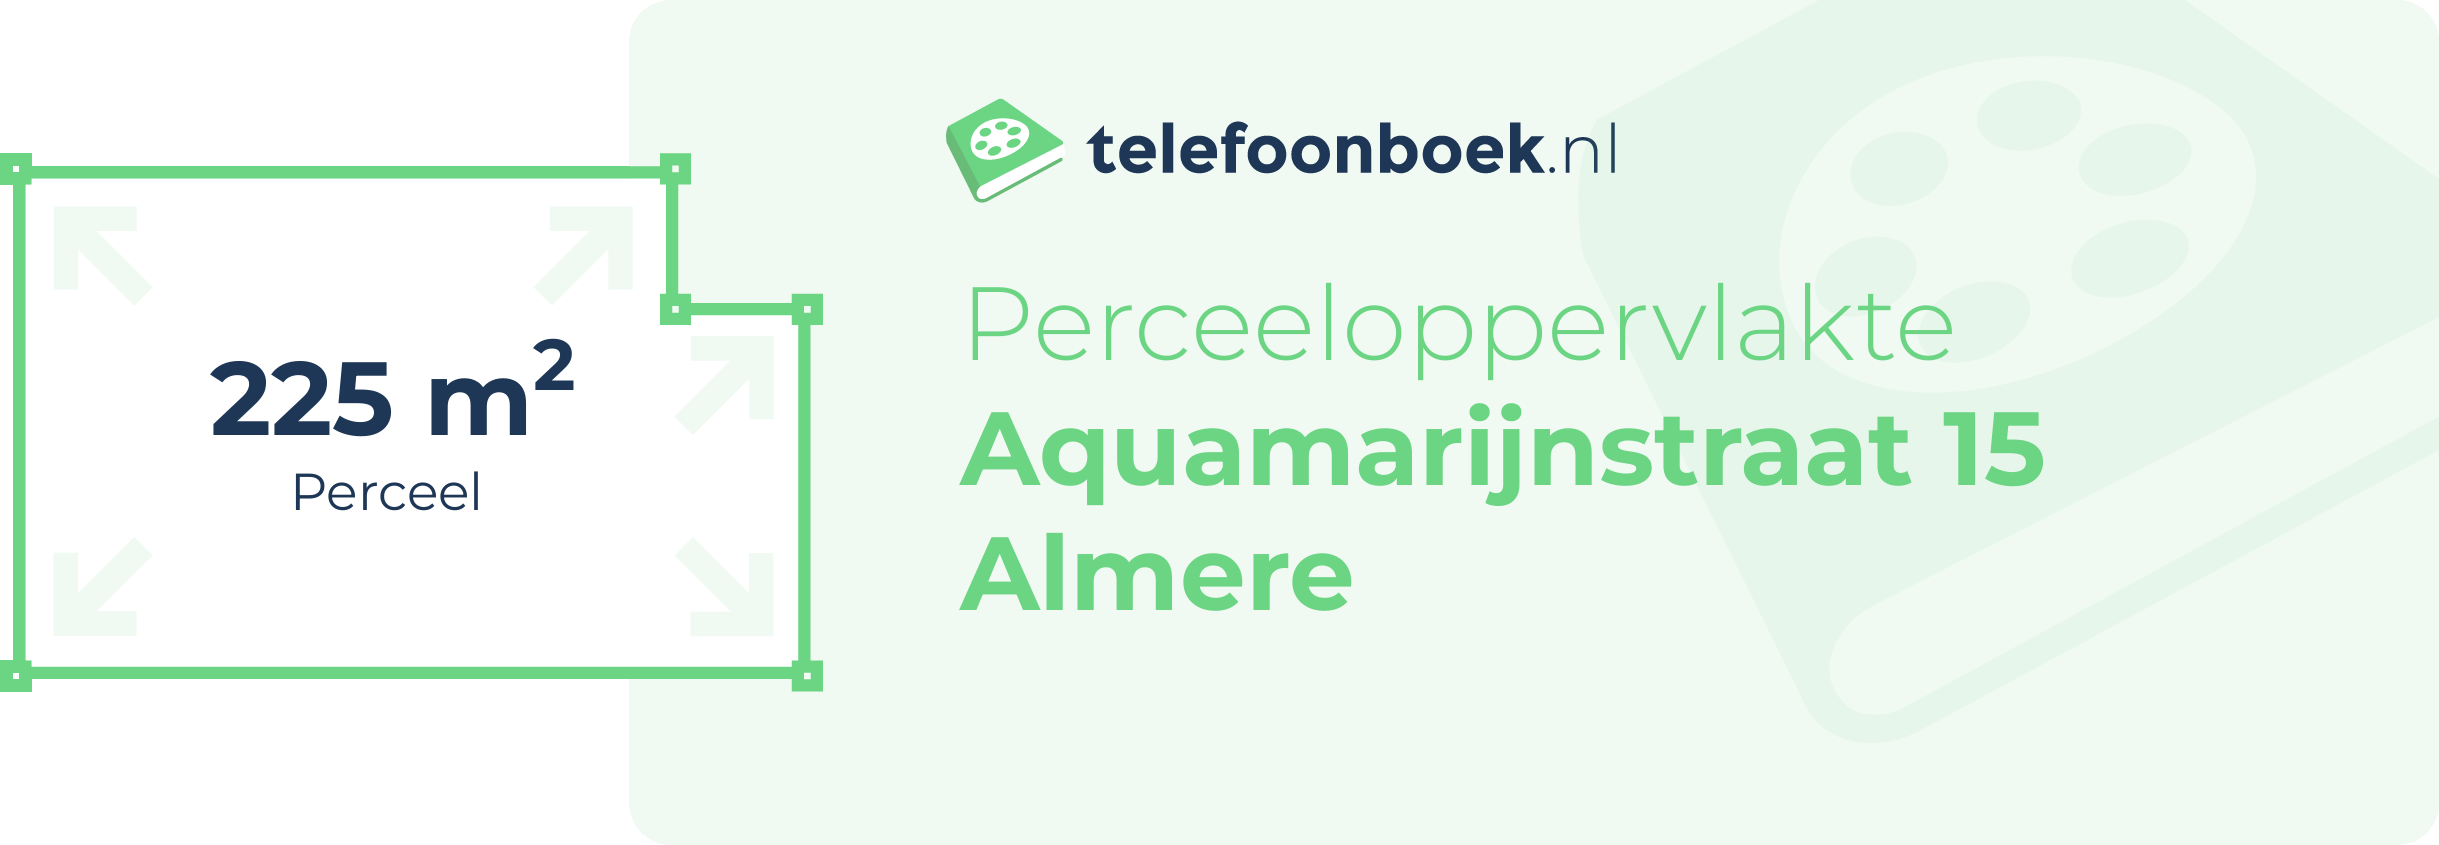 Perceeloppervlakte Aquamarijnstraat 15 Almere